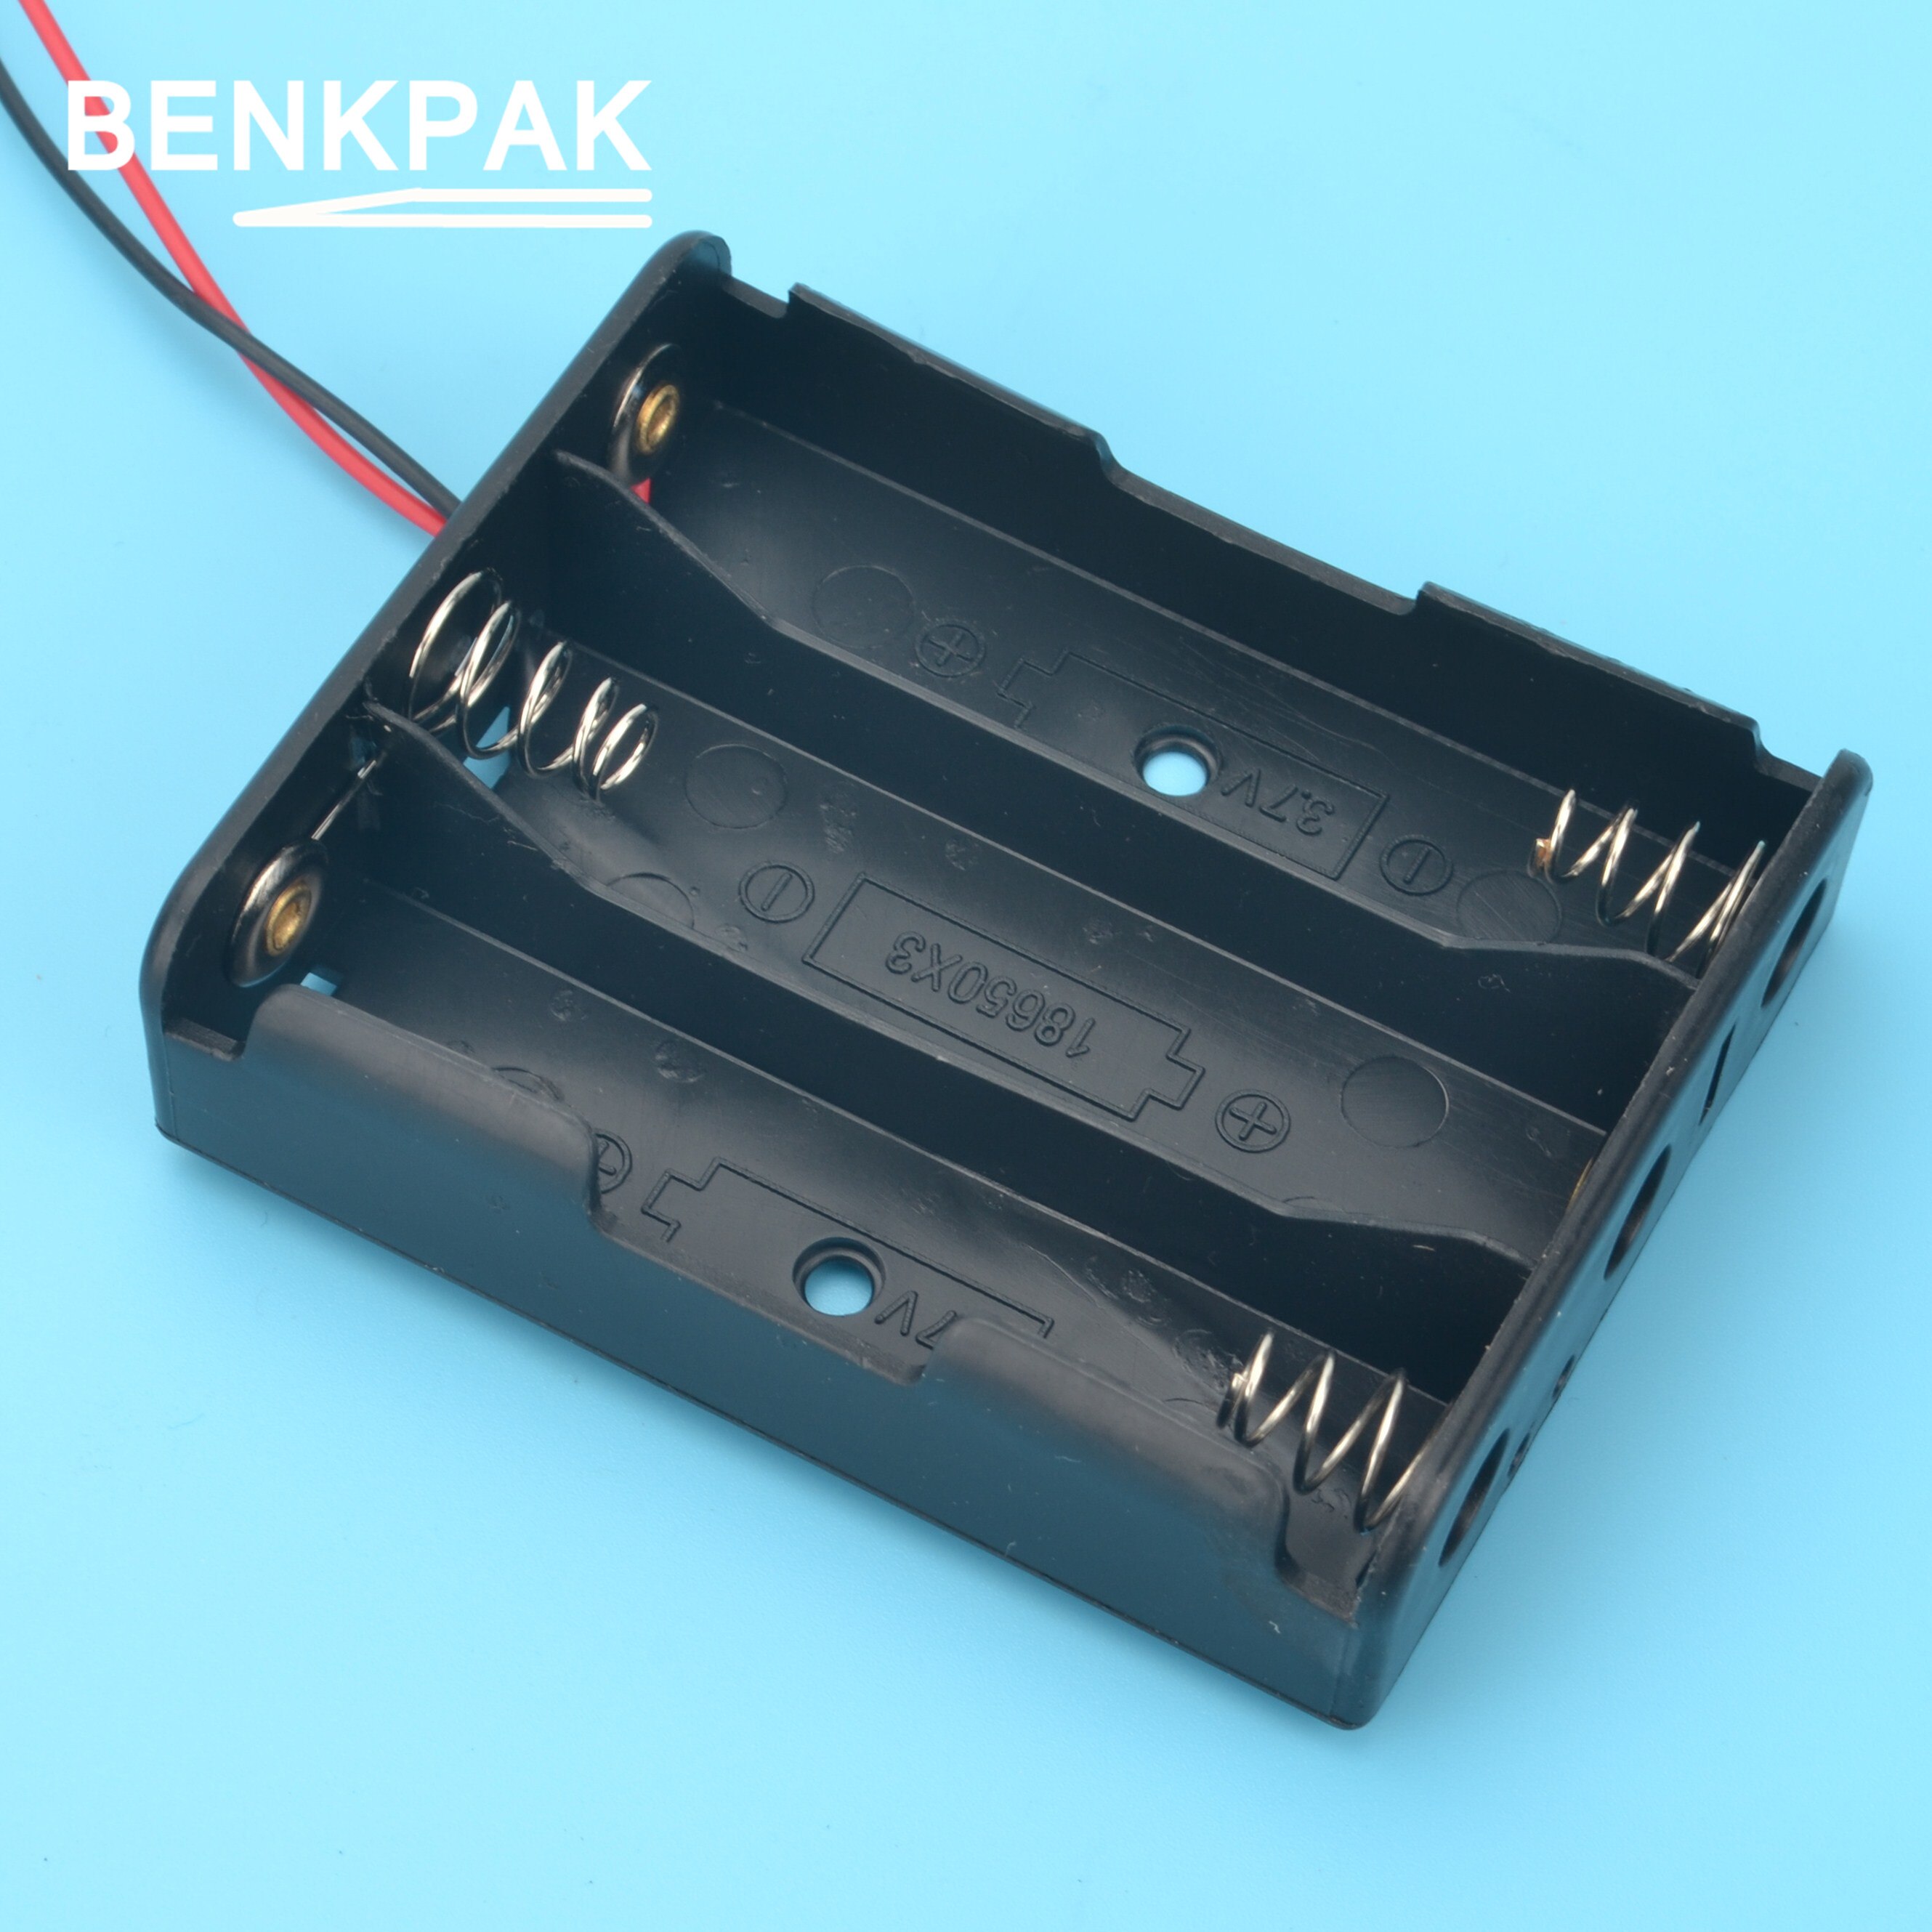 2 stk. benkpak 18650 plastik batteriholder opbevaringsæske til 3 x 18650 sort batterikasse batteristik til energimåler